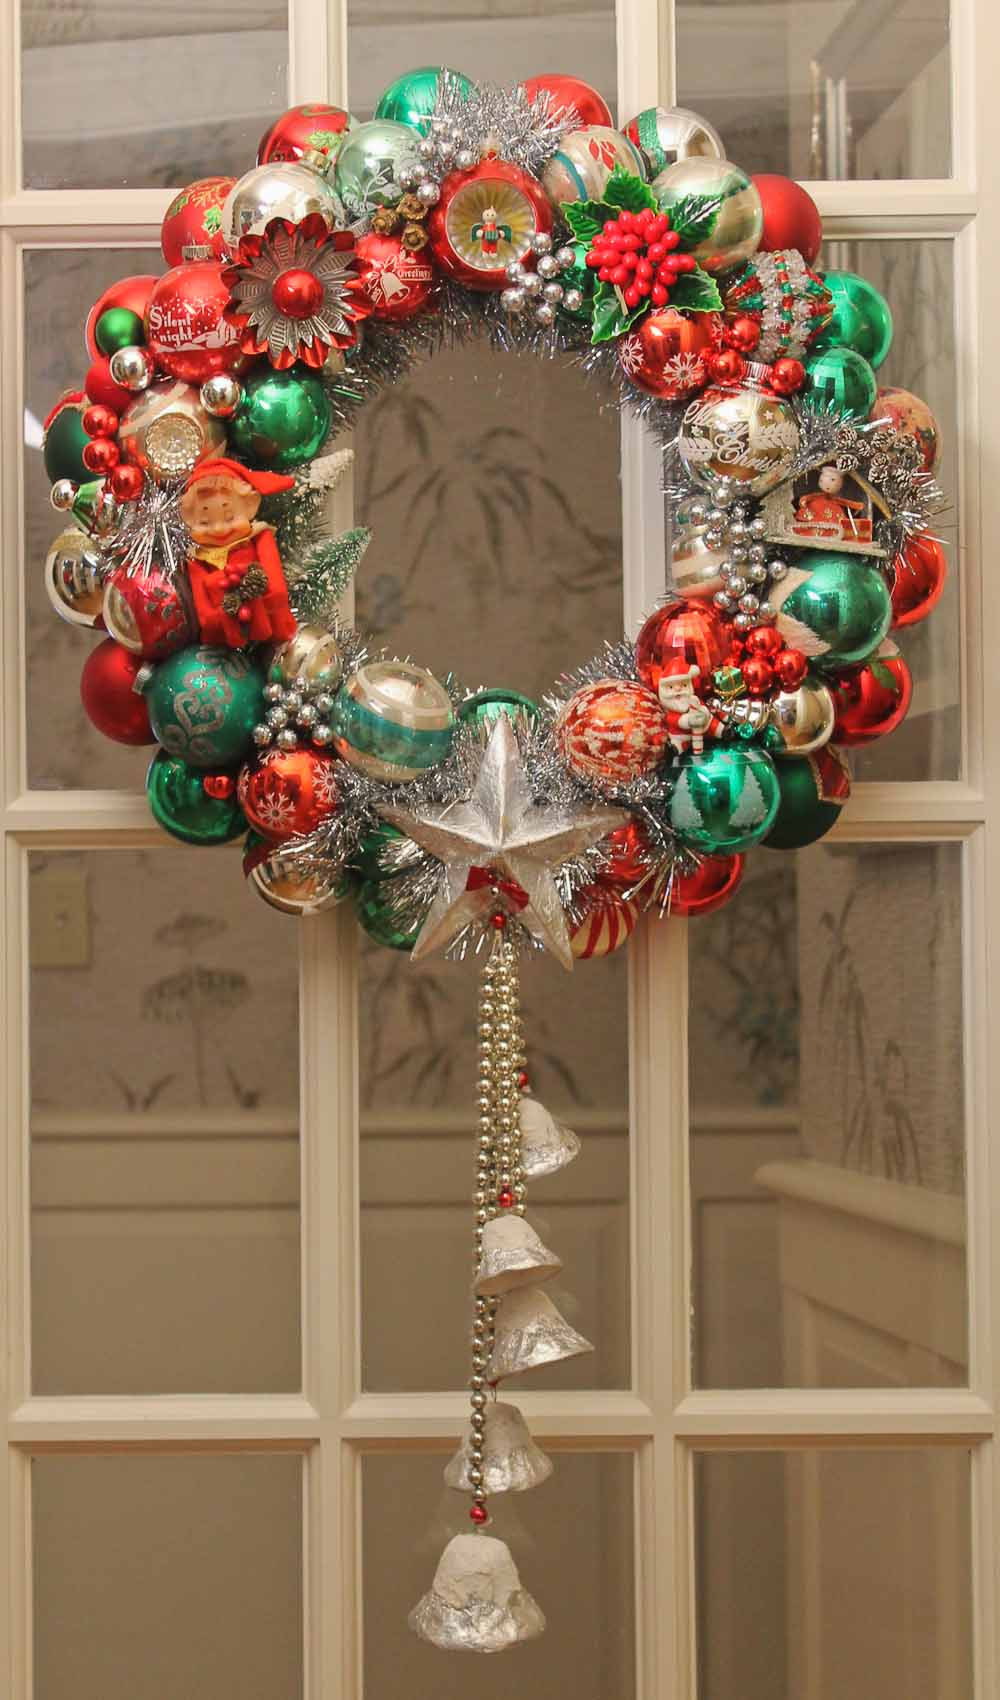 DIY Christmas Wreaths
 100 photos of DIY Christmas ornament wreaths Upload